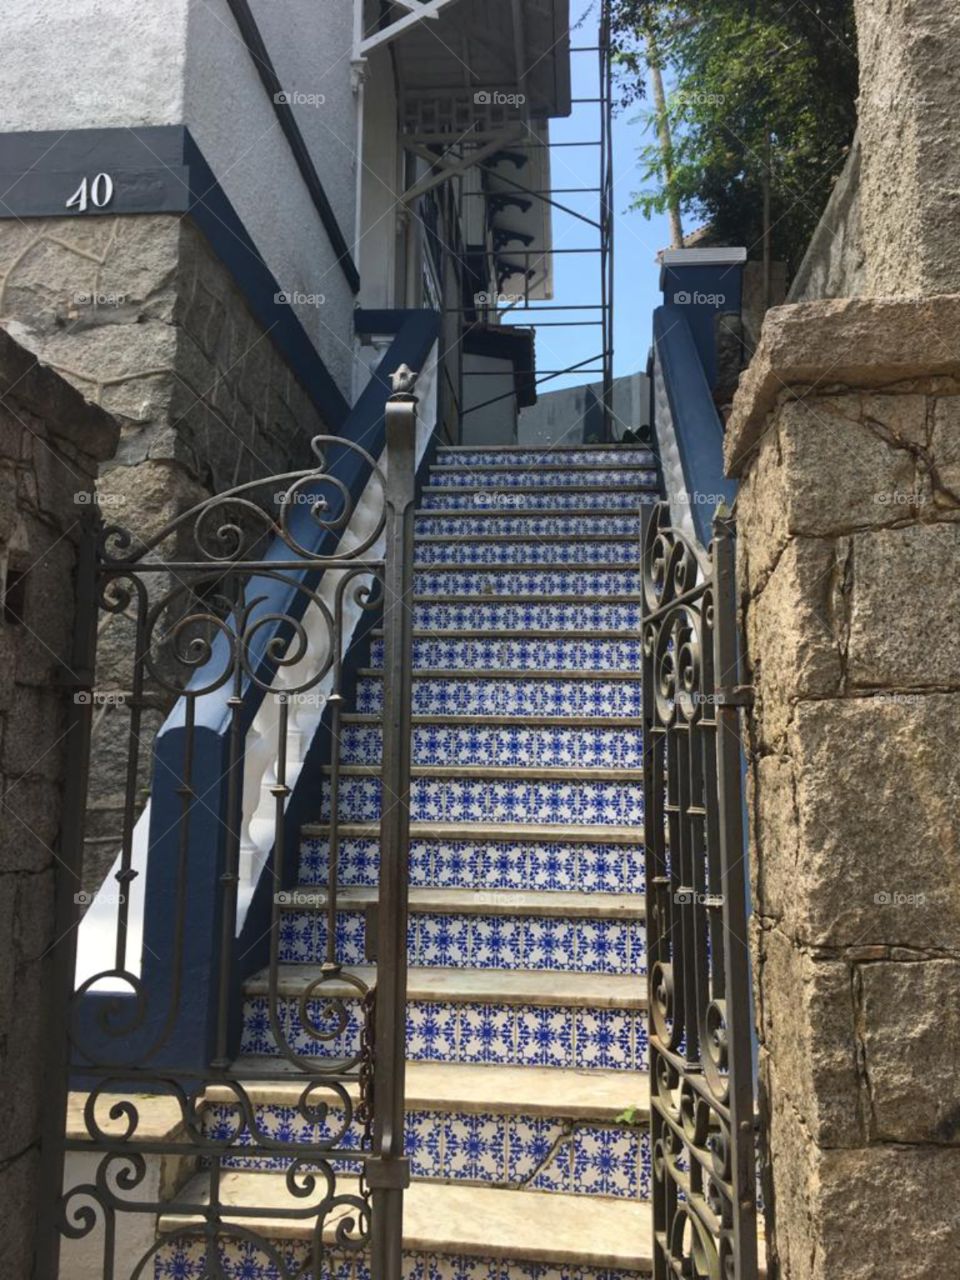 la entrada de una casa en petropolis, río de Janeiro. Te invita a la casa, con azulejos azules que decoran la escalera. lo antiguo tiene su lado pintoresco.